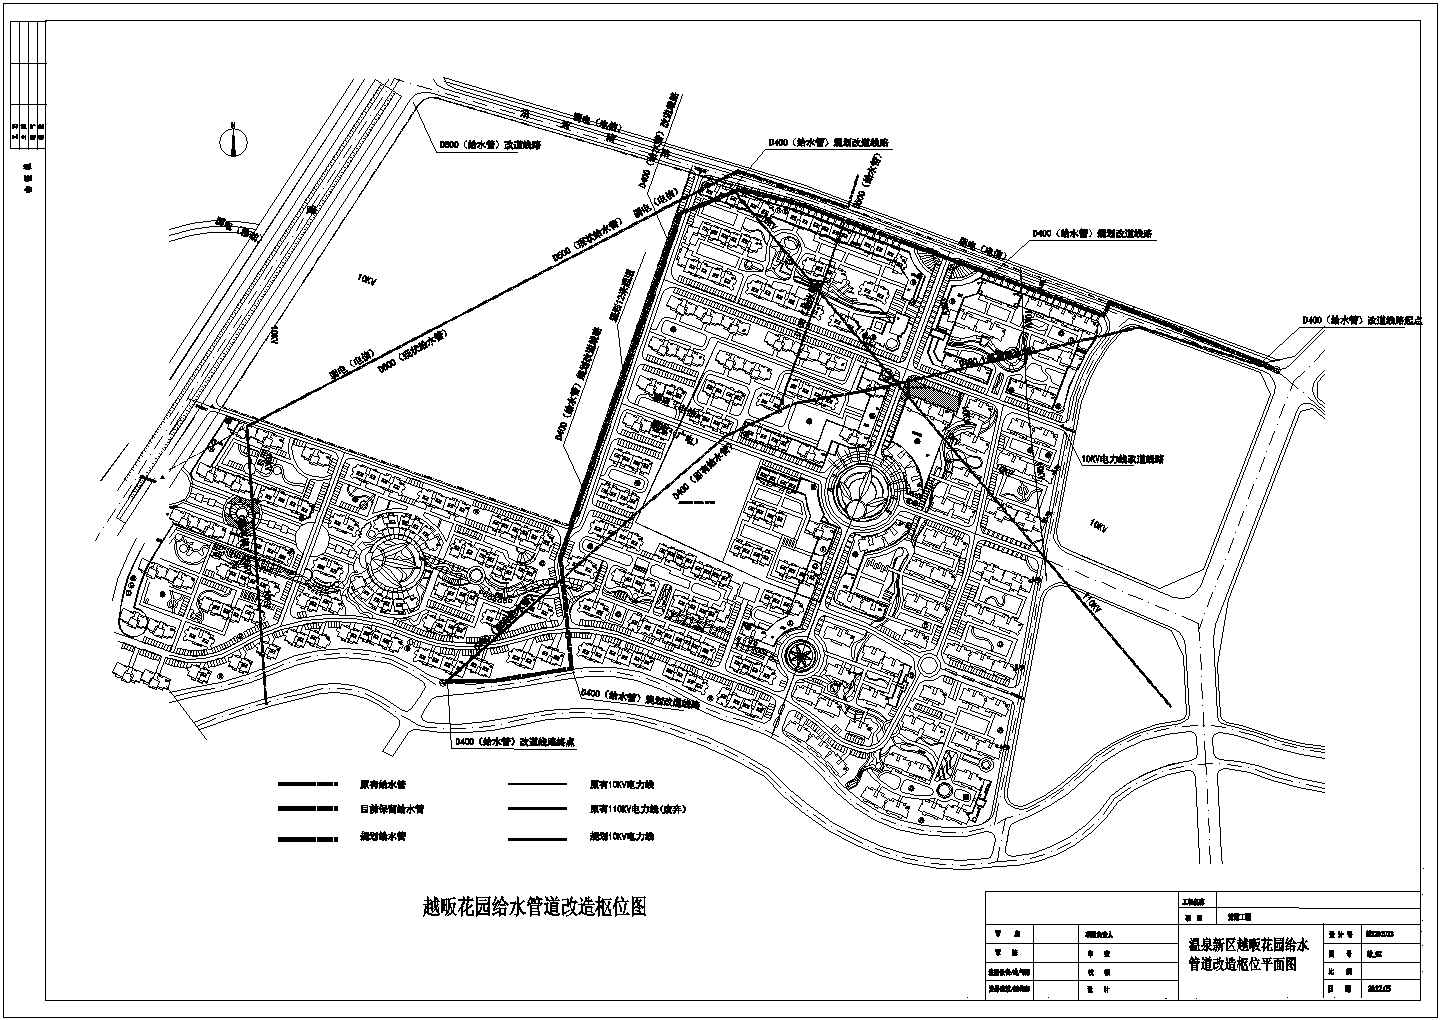 赵畈花园道路给水管道改造工程施工图